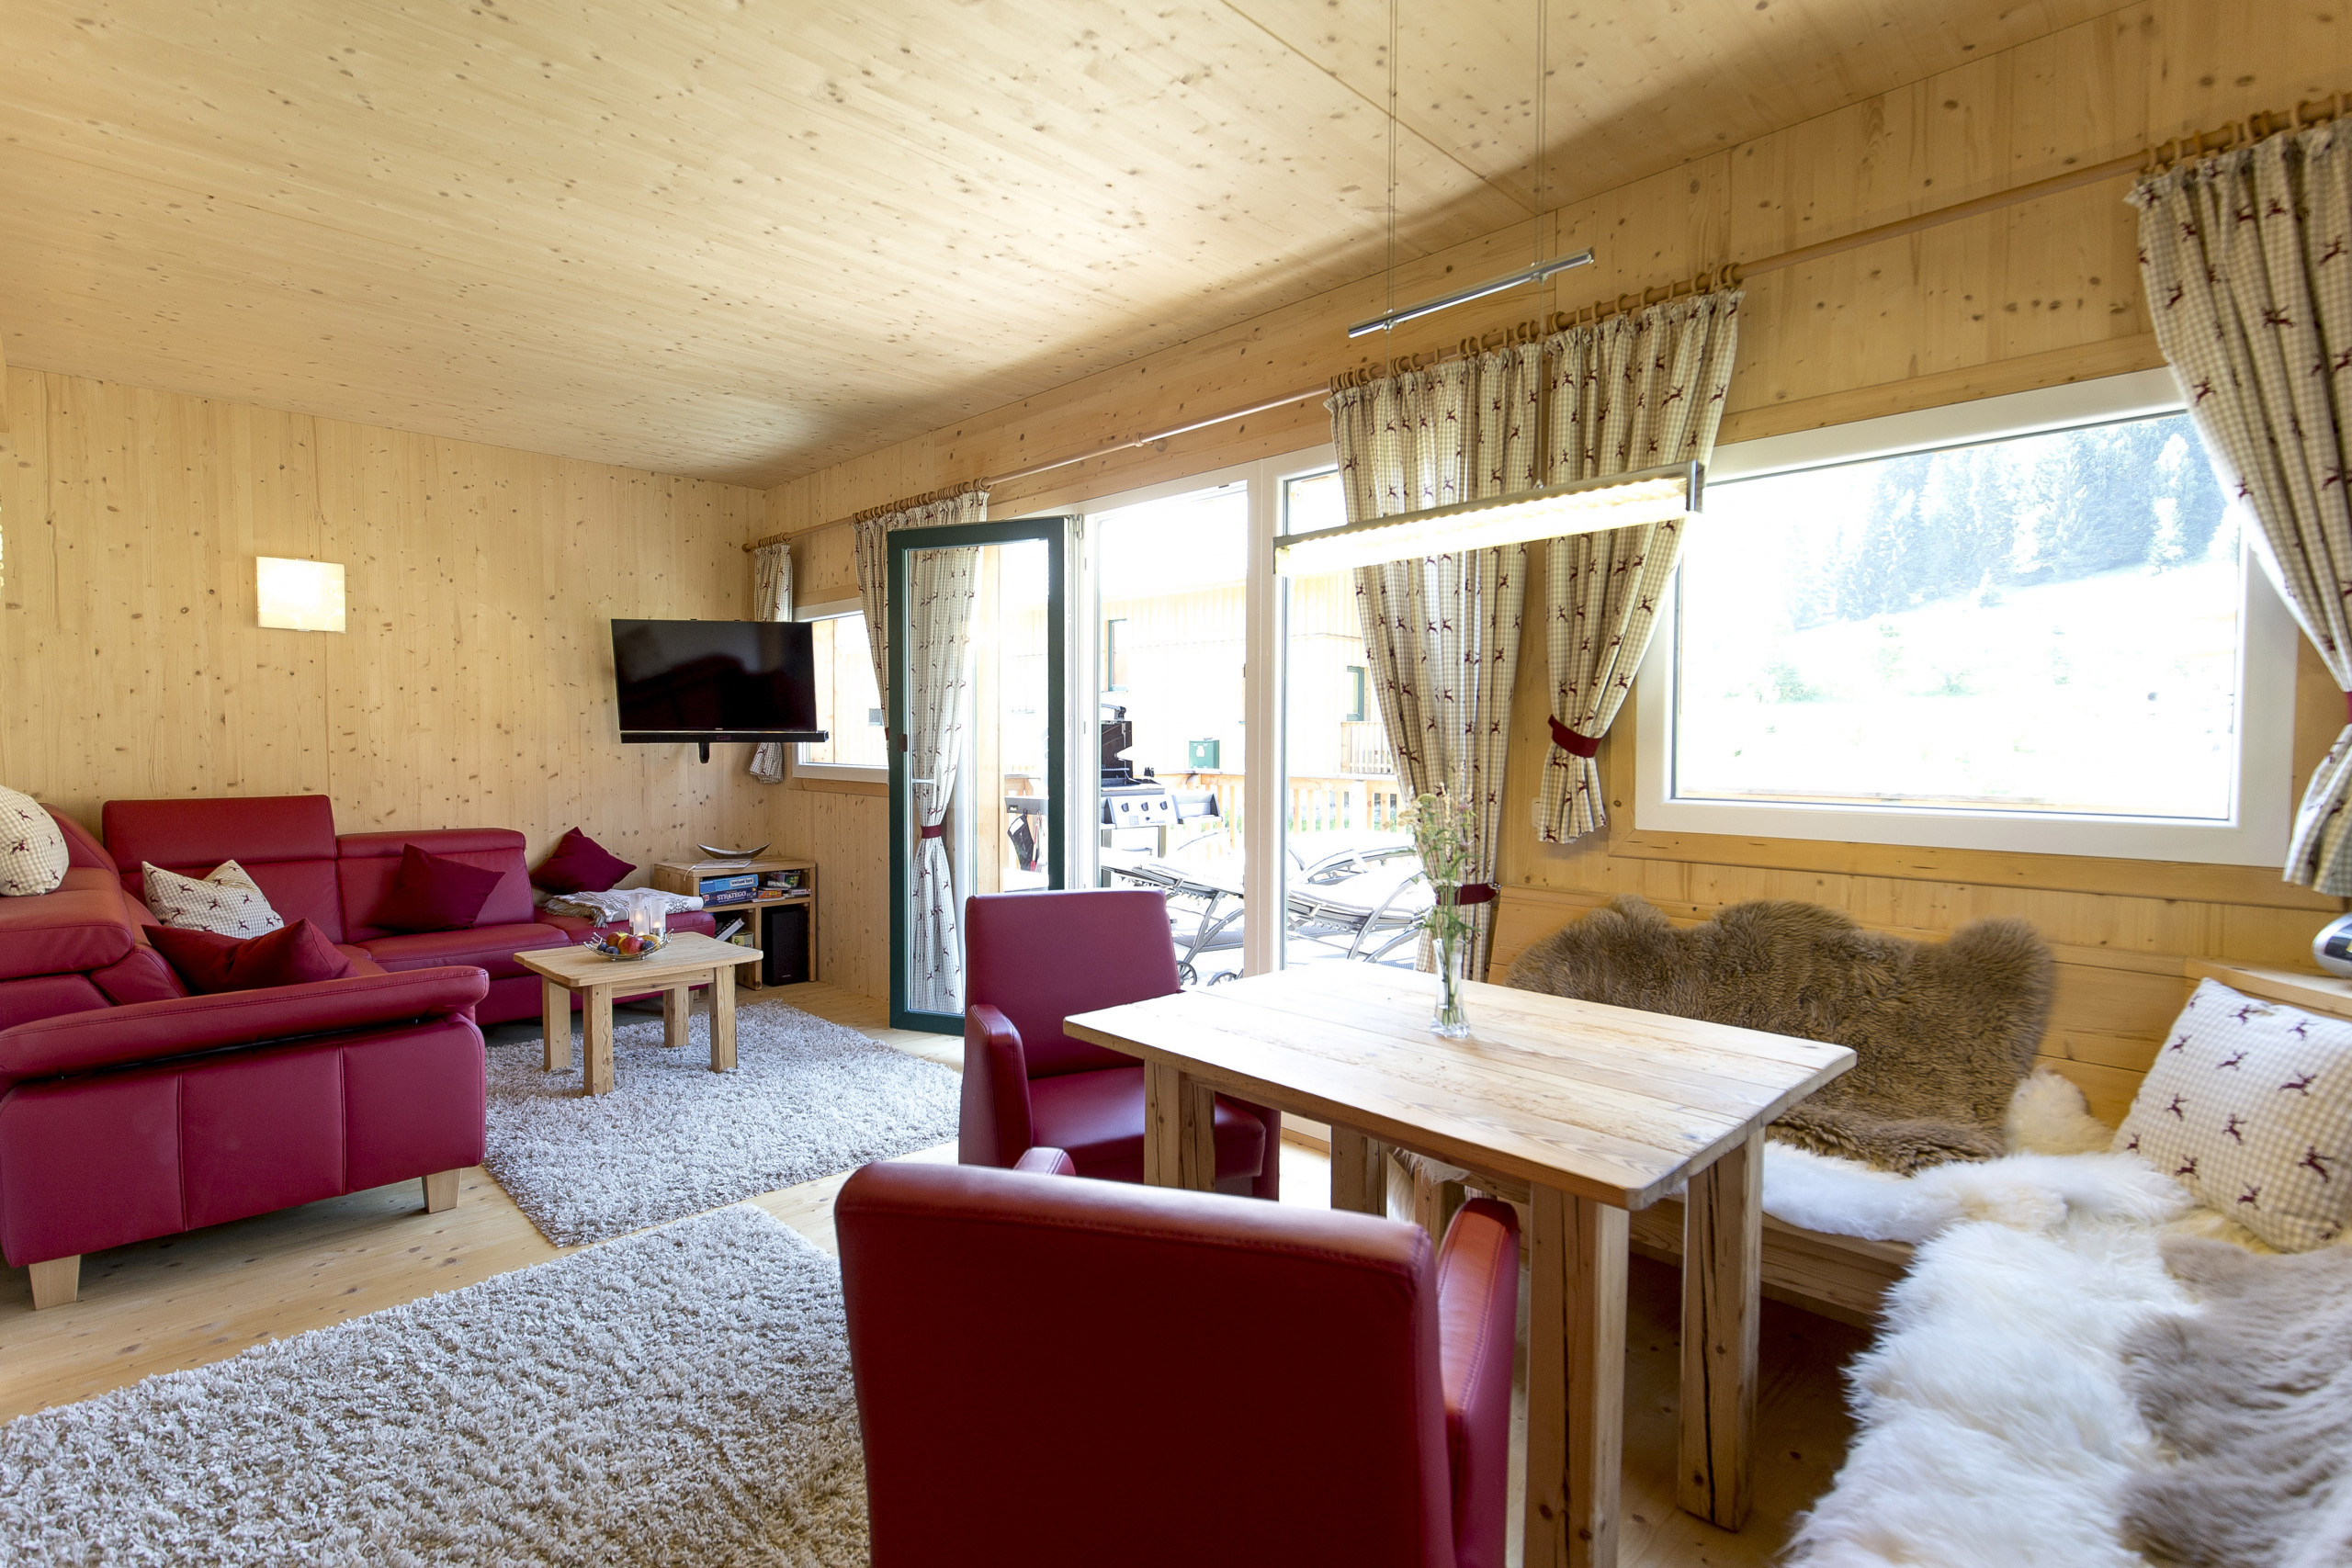  in St. Georgen am Kreischberg - Chalet # 40a with 2 bedrooms & IR sauna